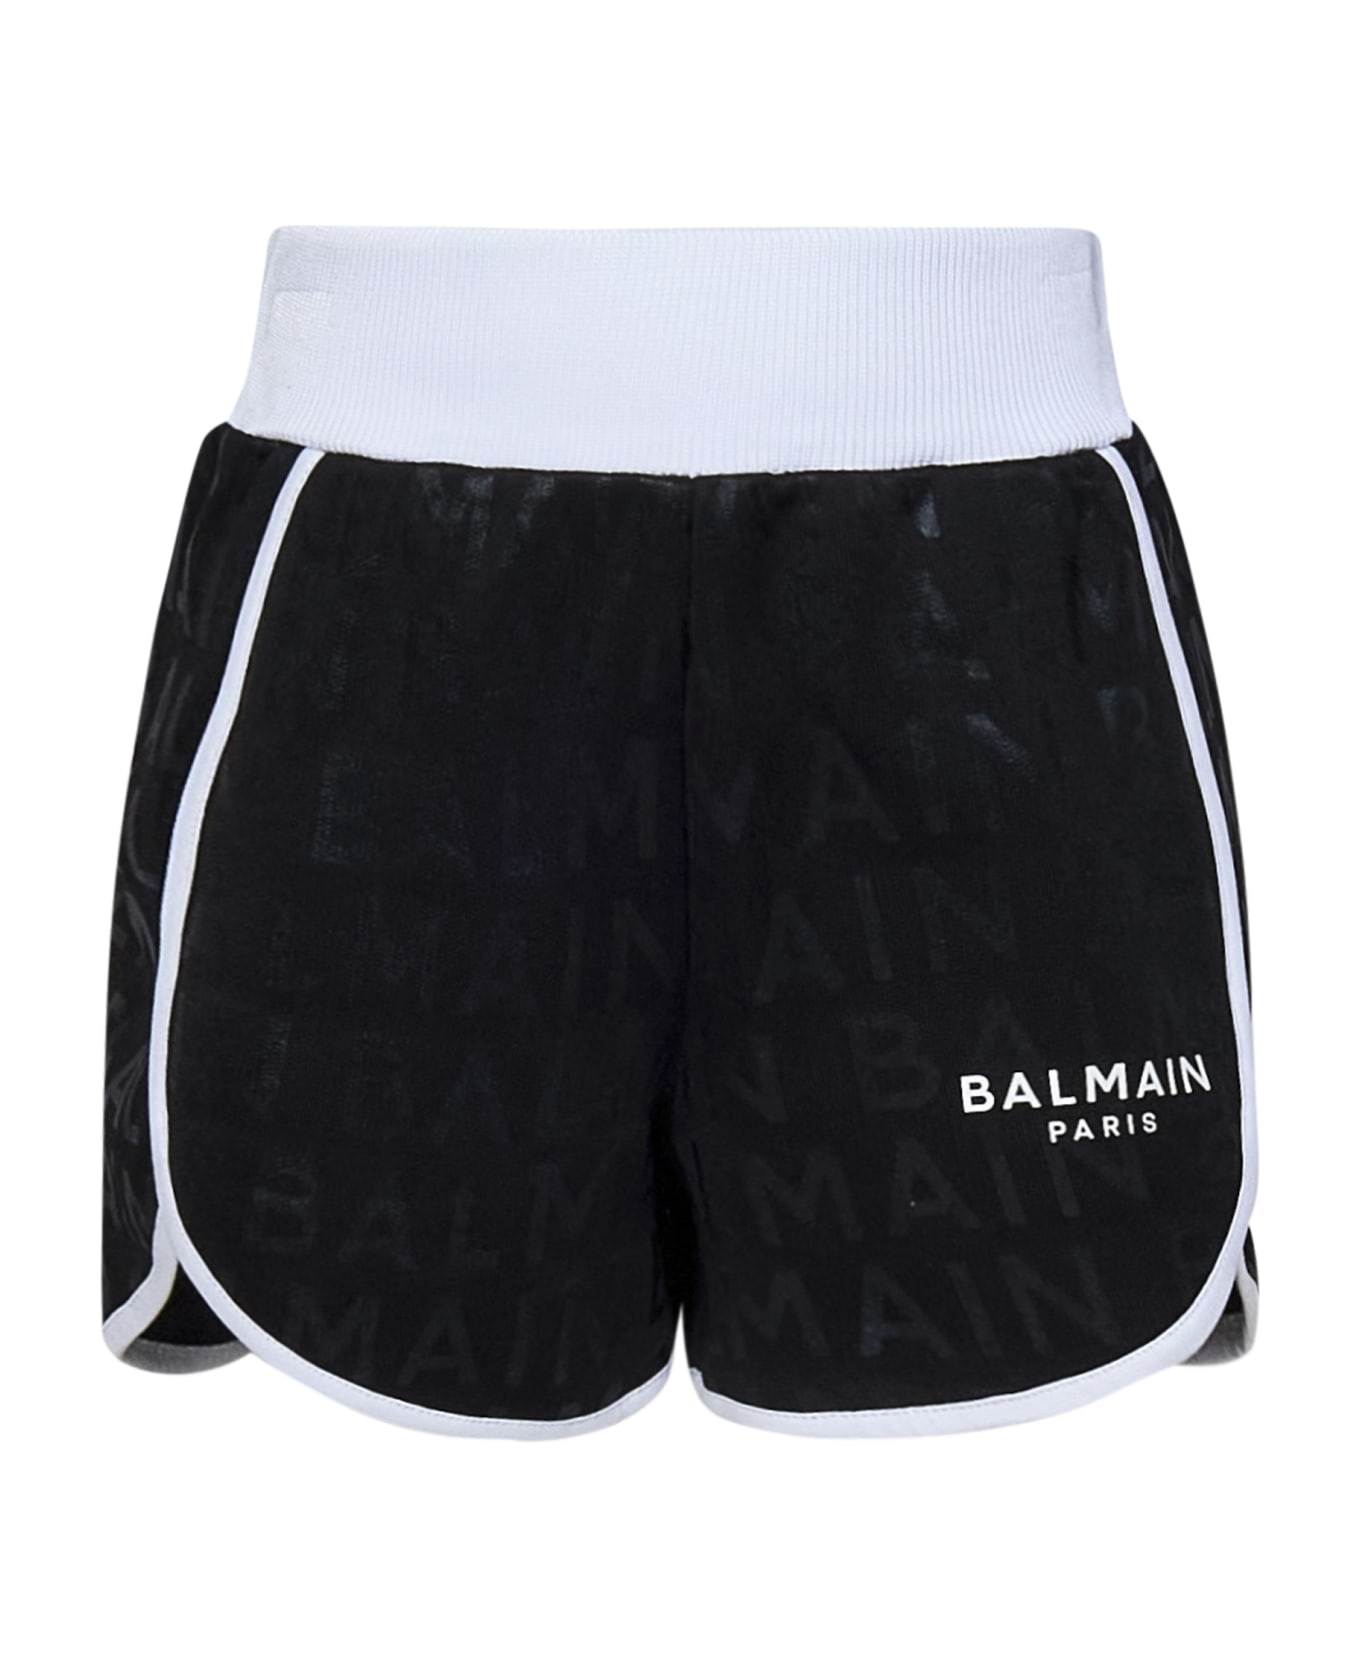 Balmain Paris Kids Shorts - Black